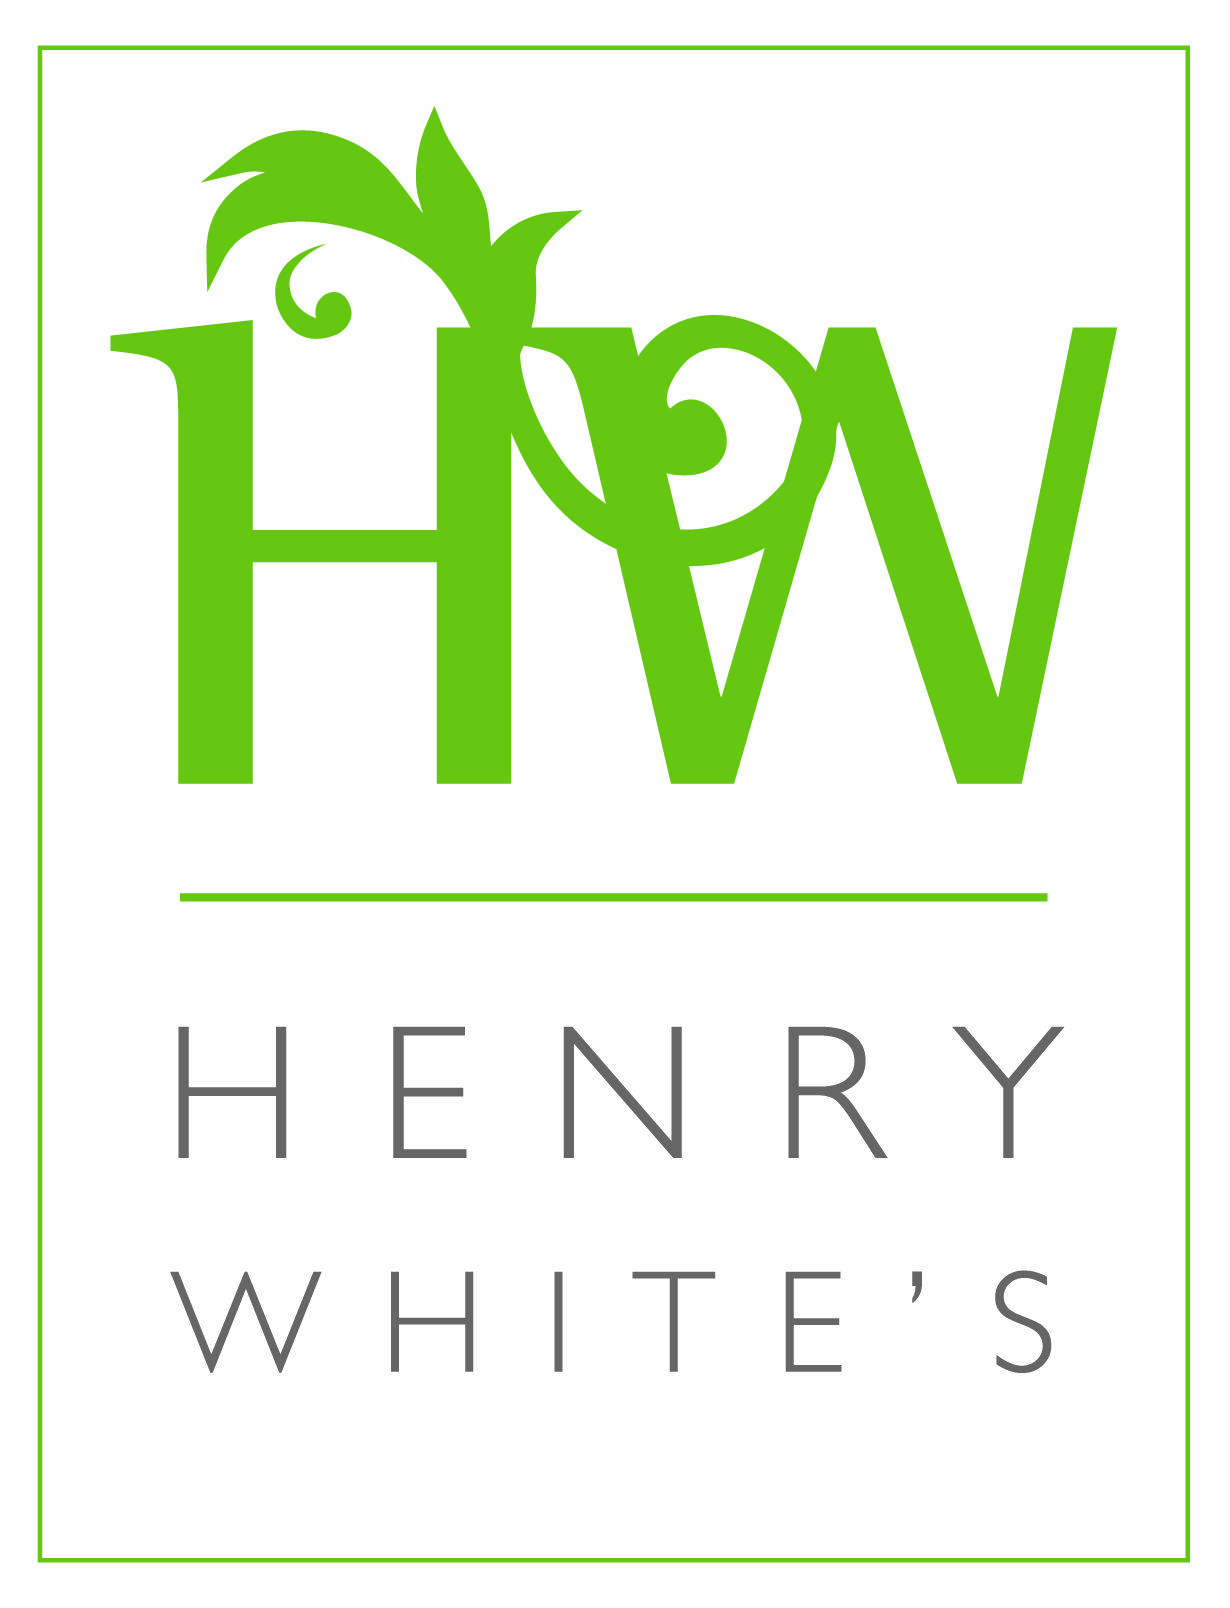 Green and White Restaurant Logo - Henry White's Restaurant